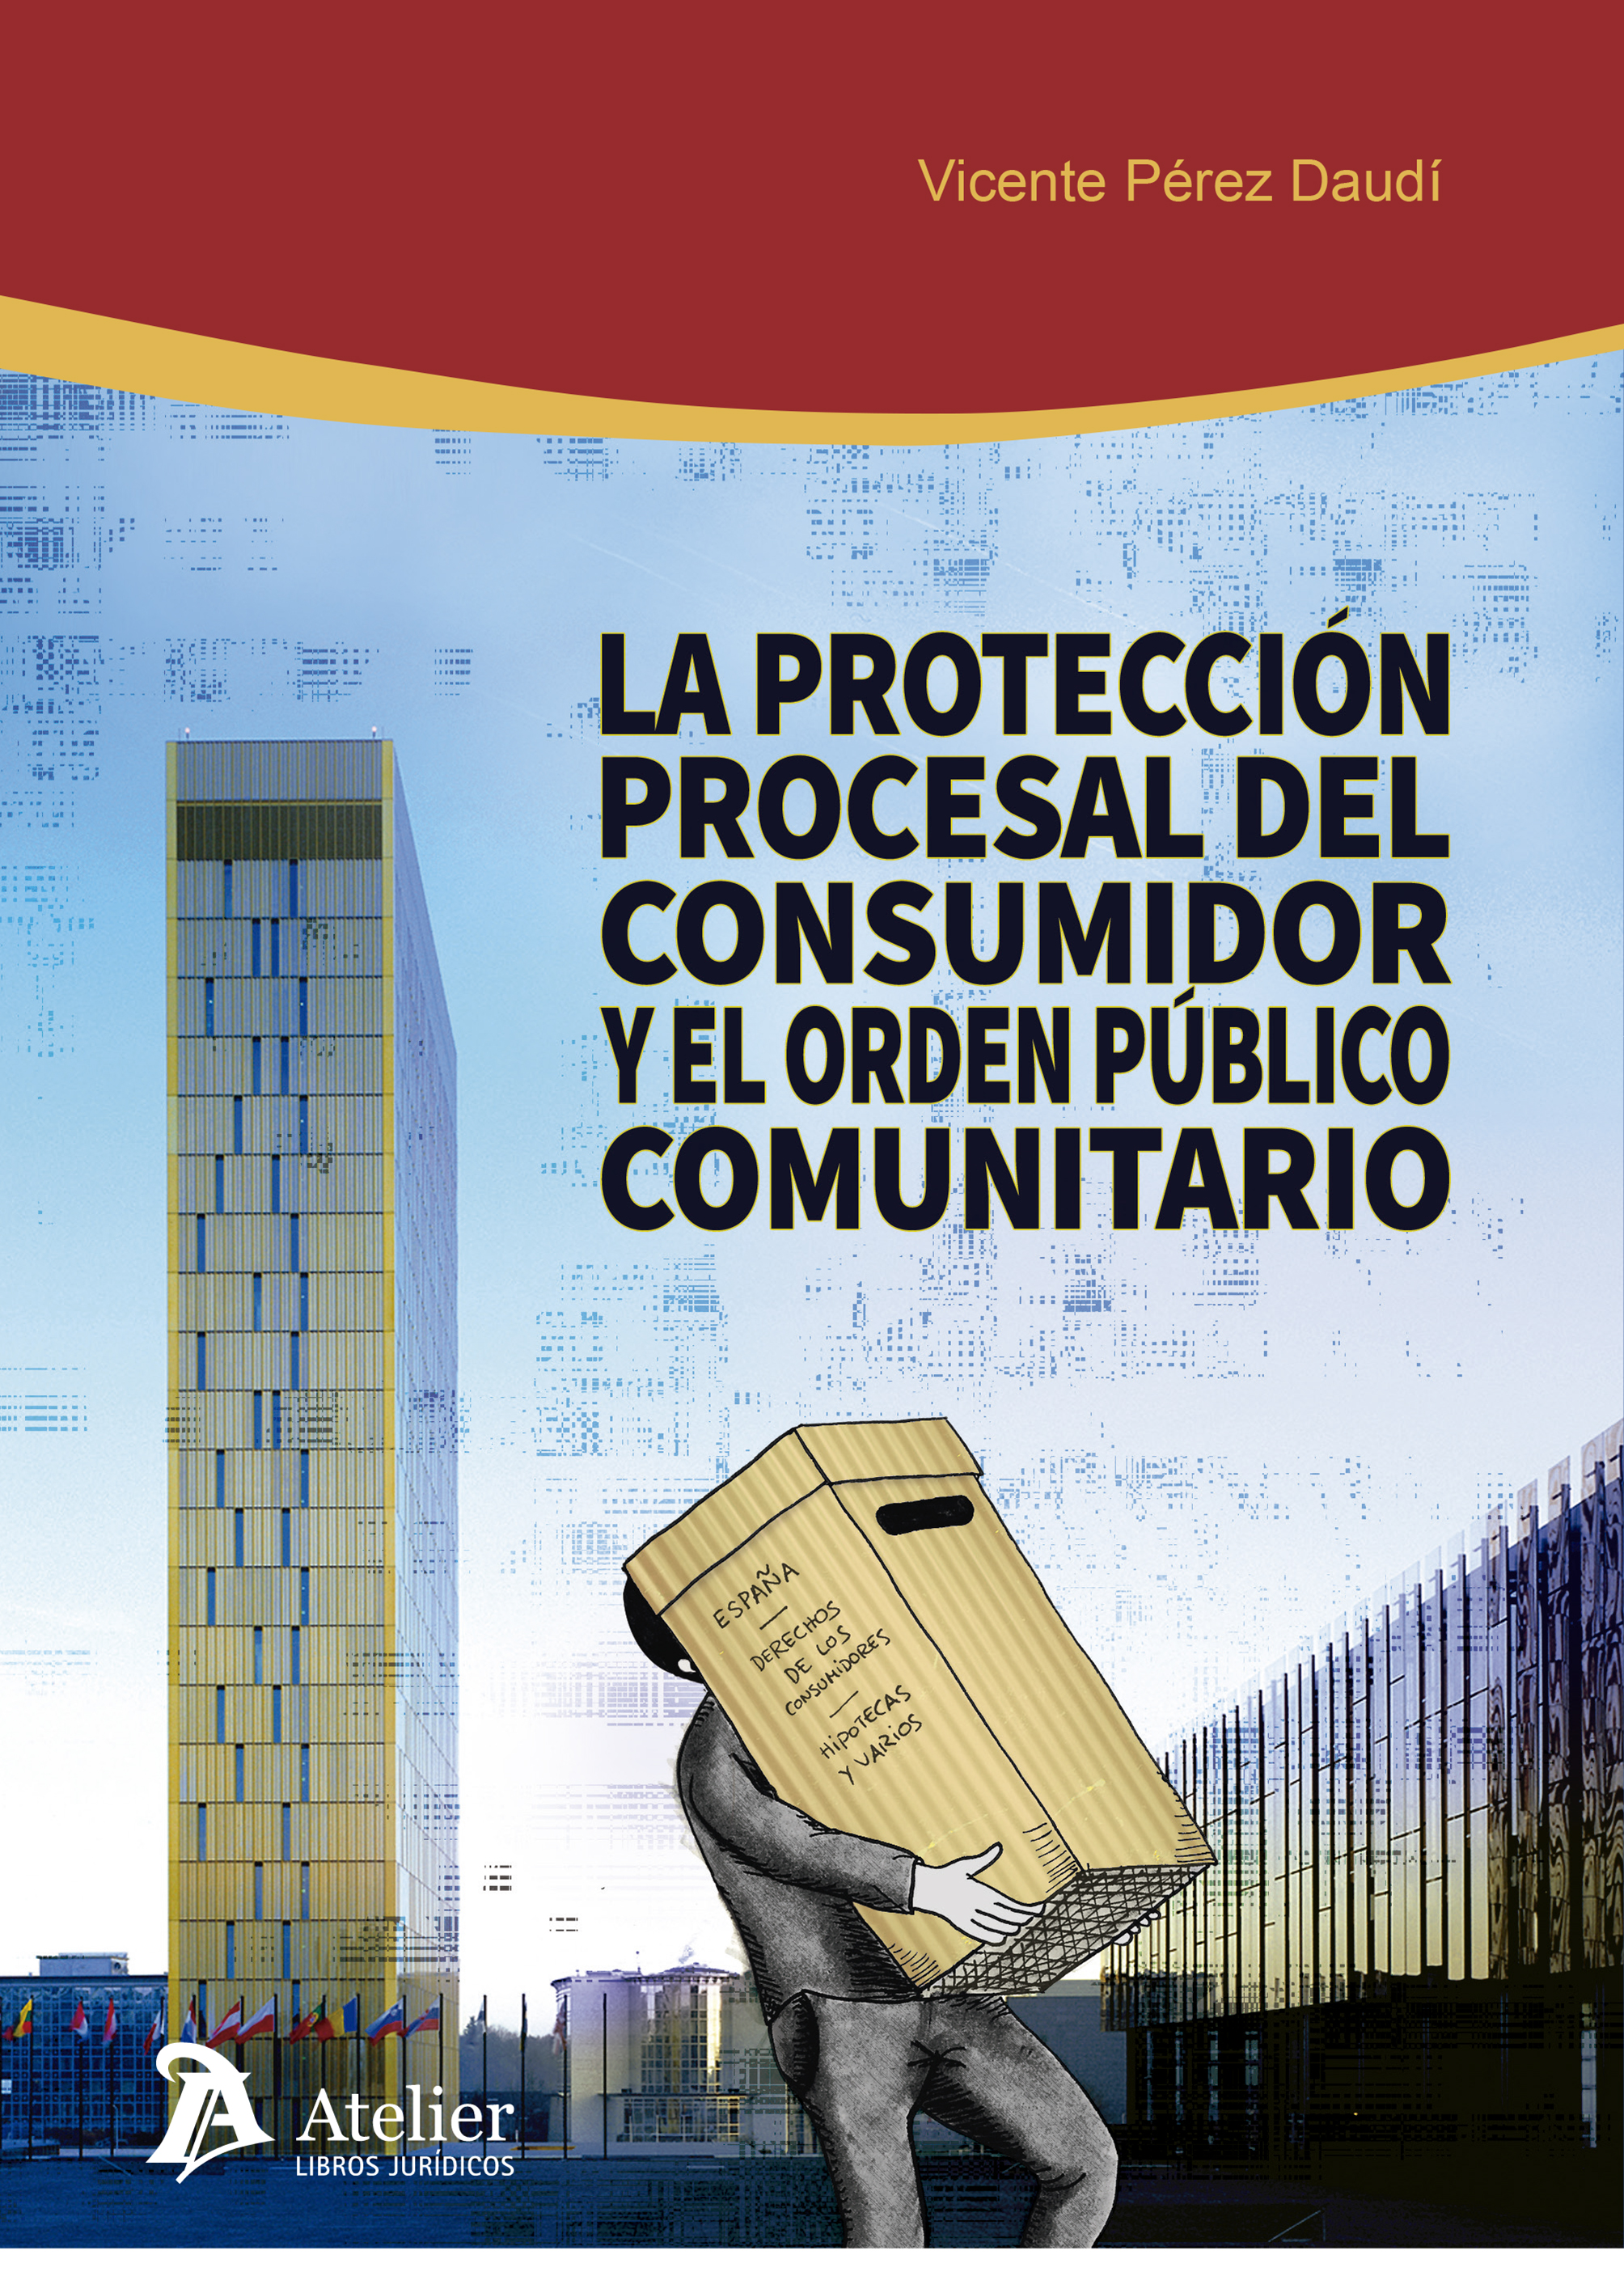 La protección procesal del consumidor y el orden público comunitario